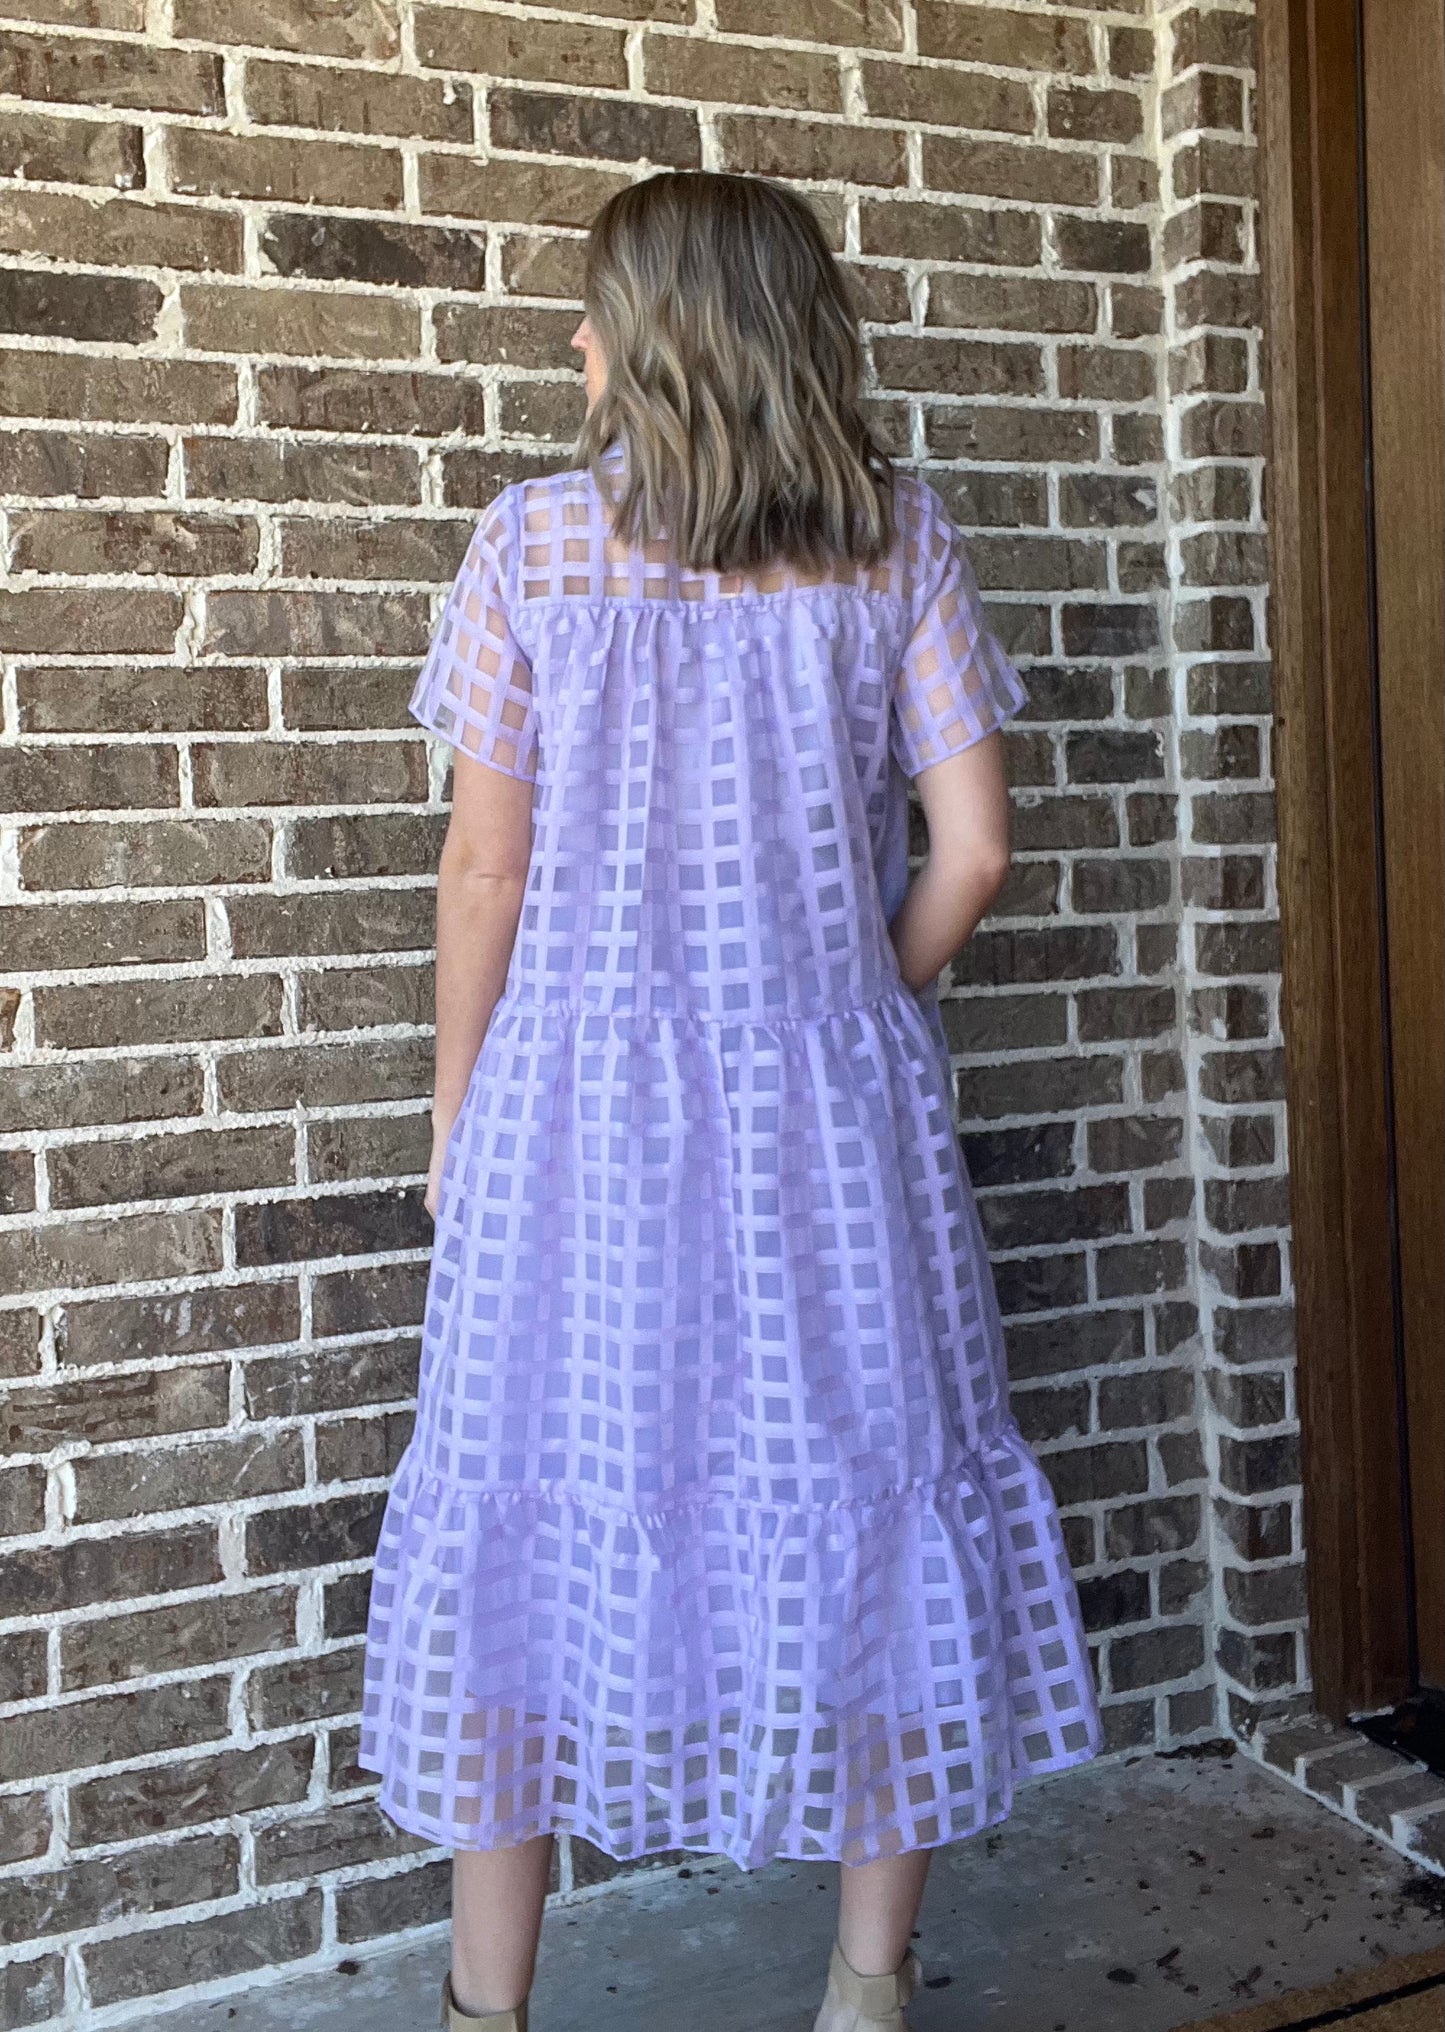 LAST ONE-Lovely lavender midi dress